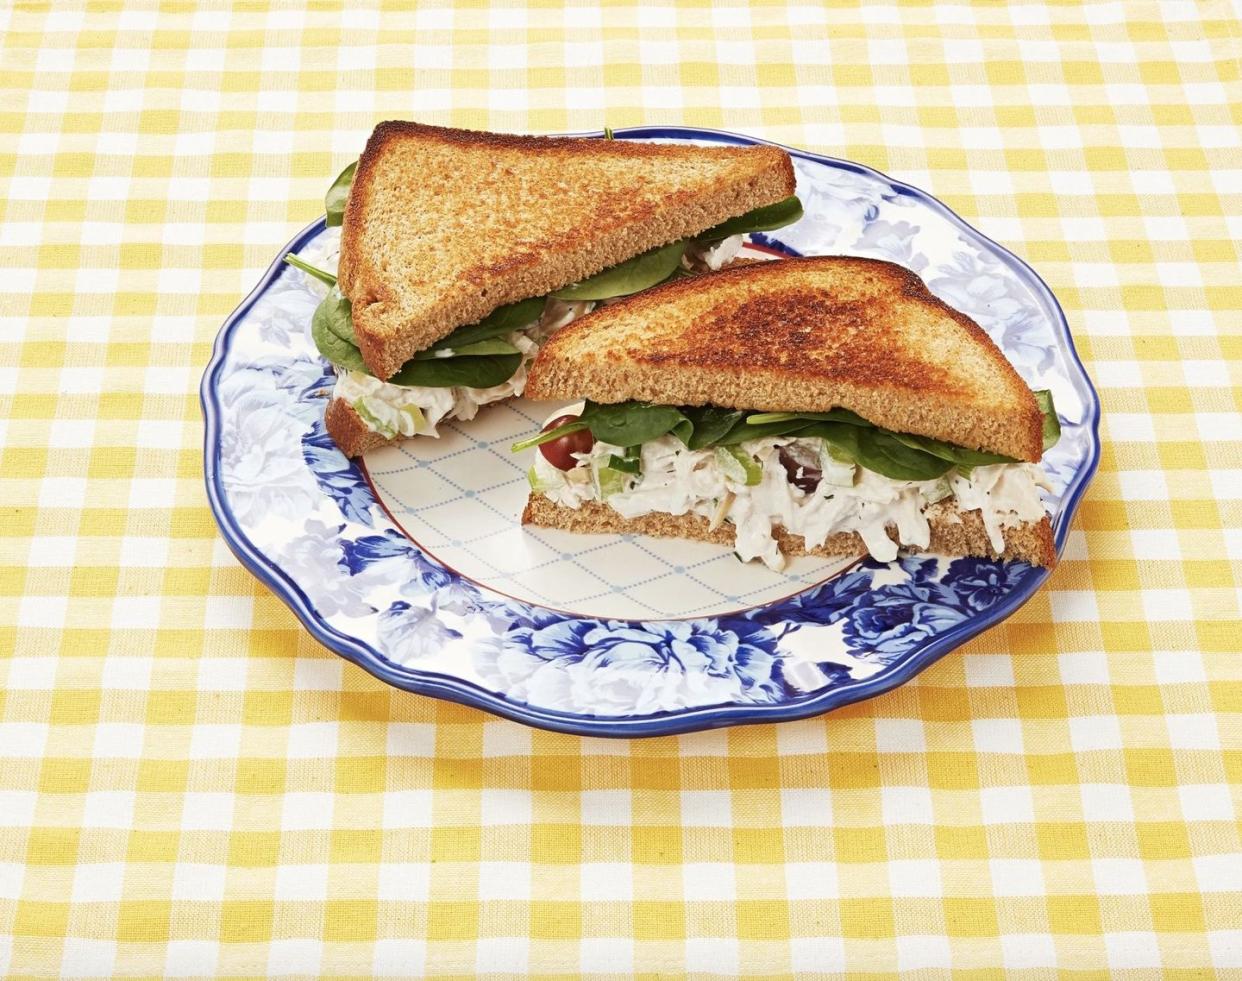 chicken salad sandwich on blue plate